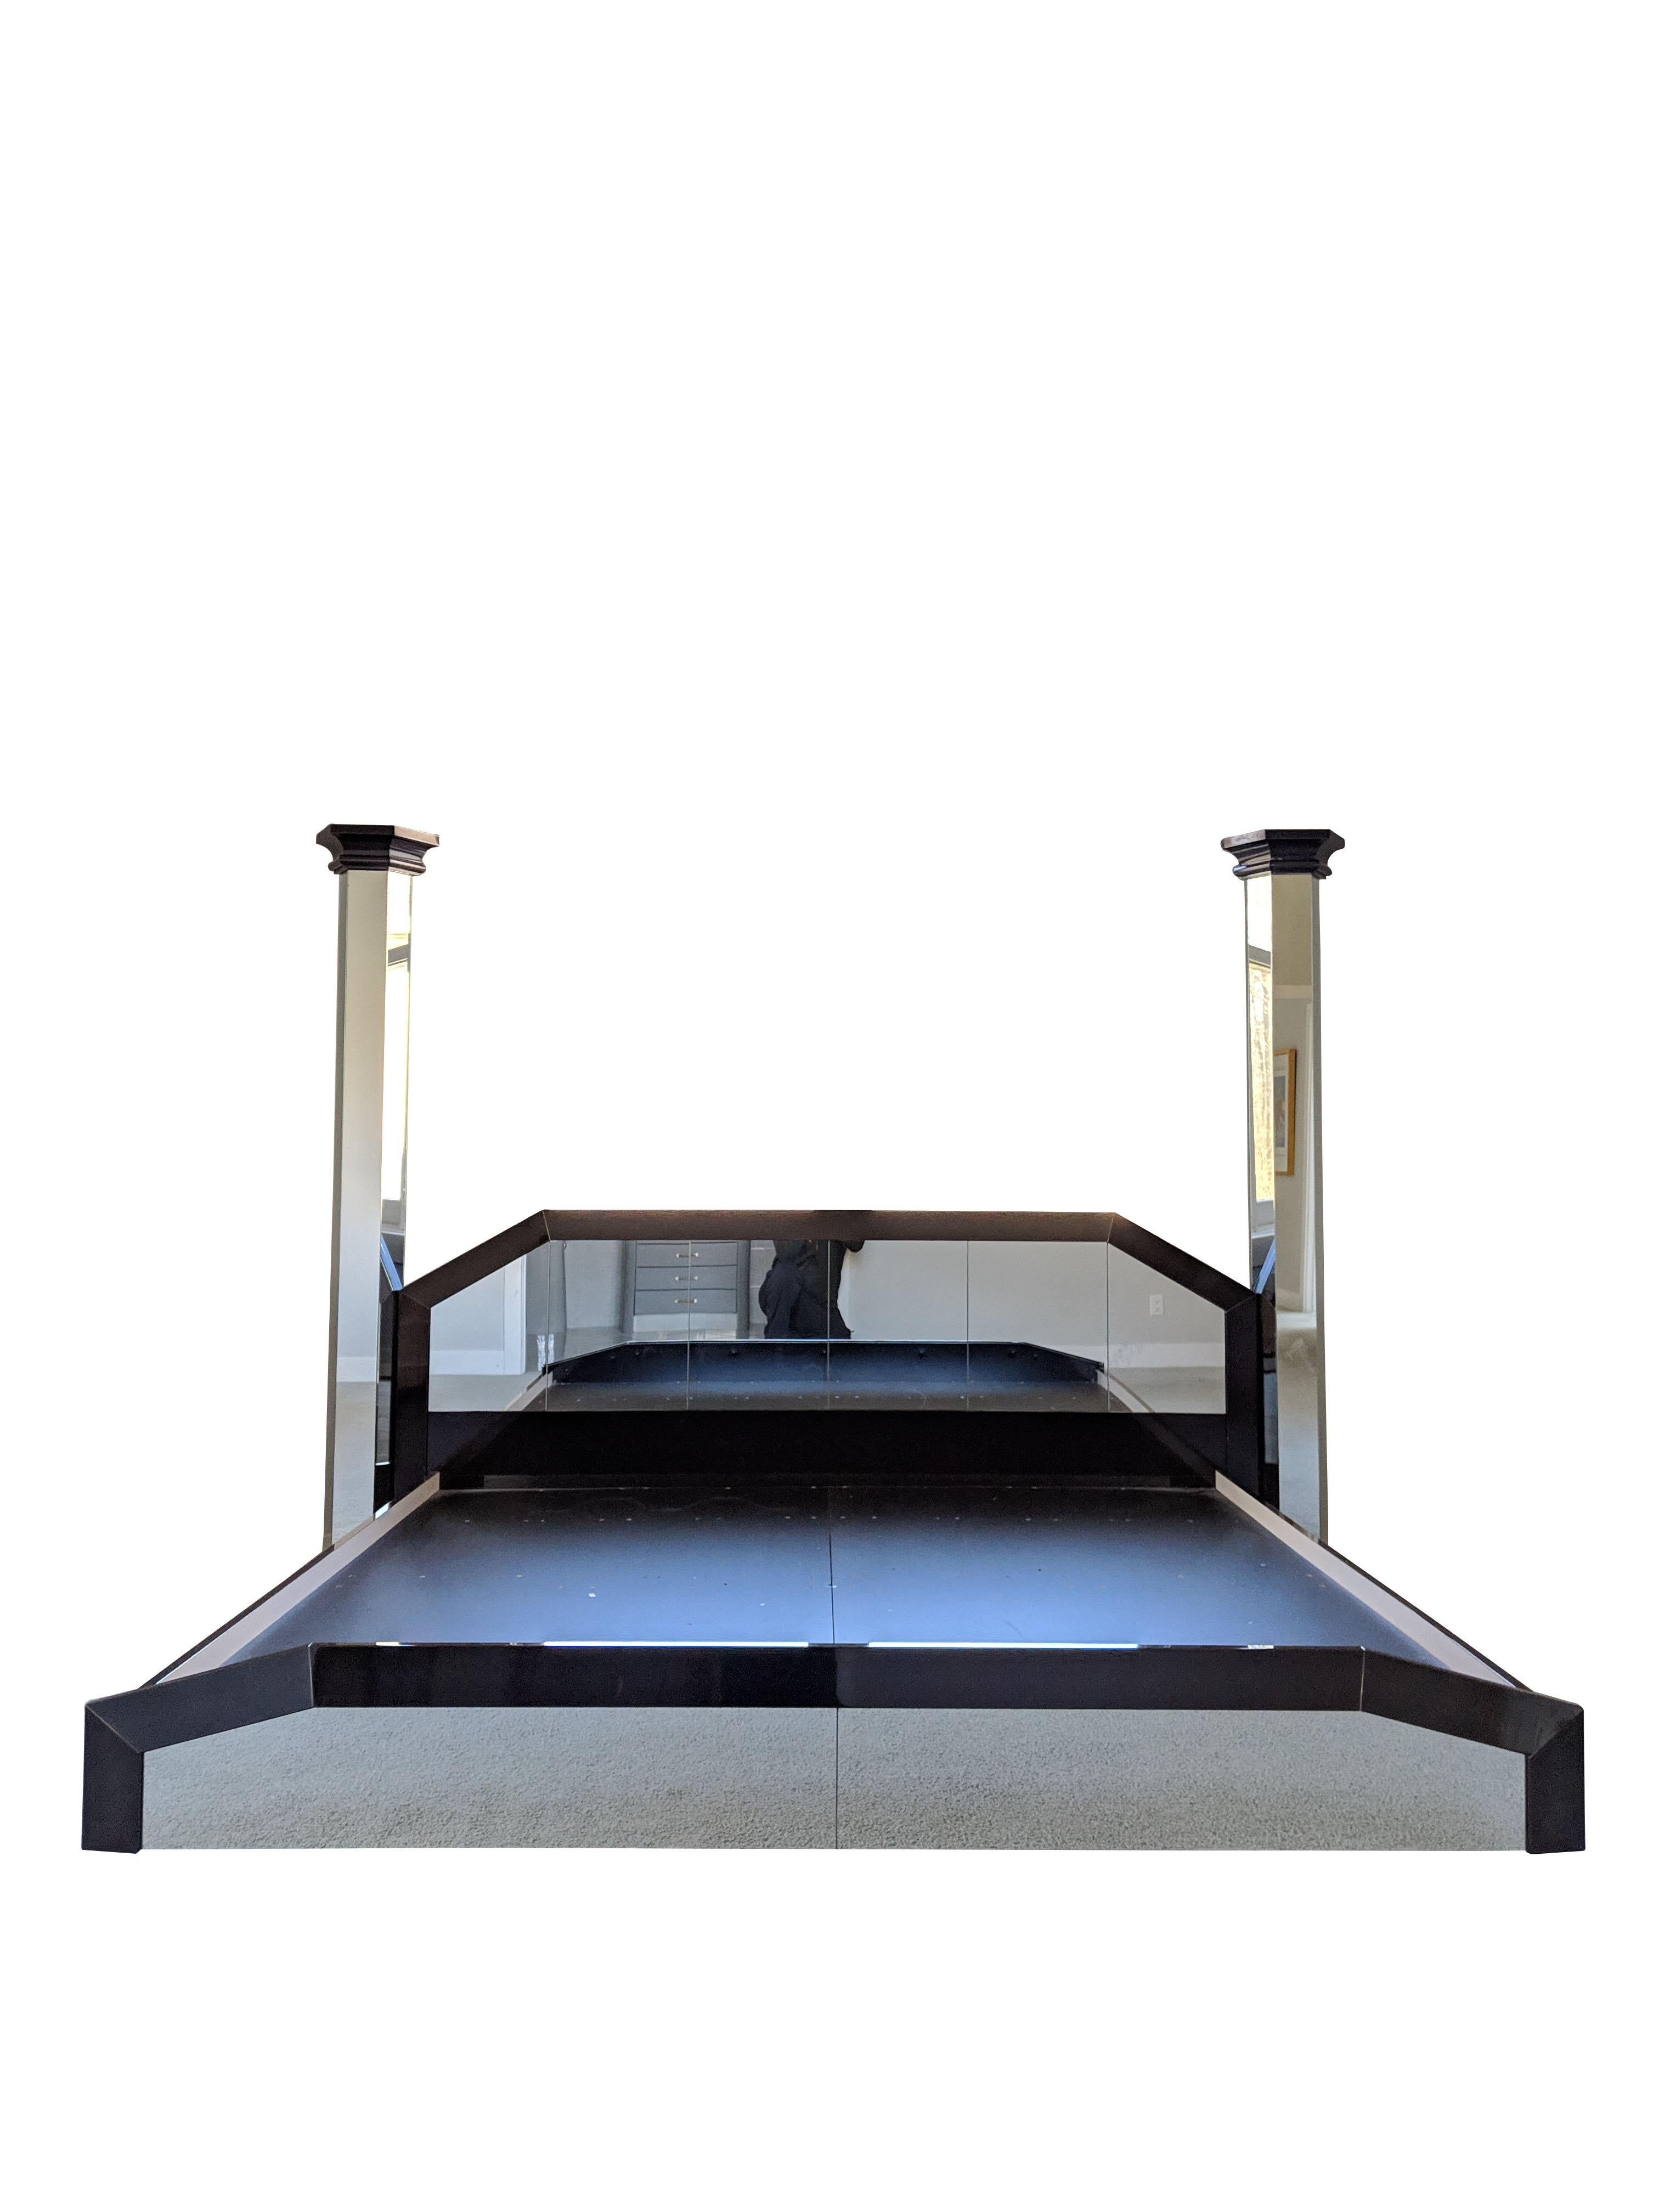 king size floating bed frame plans